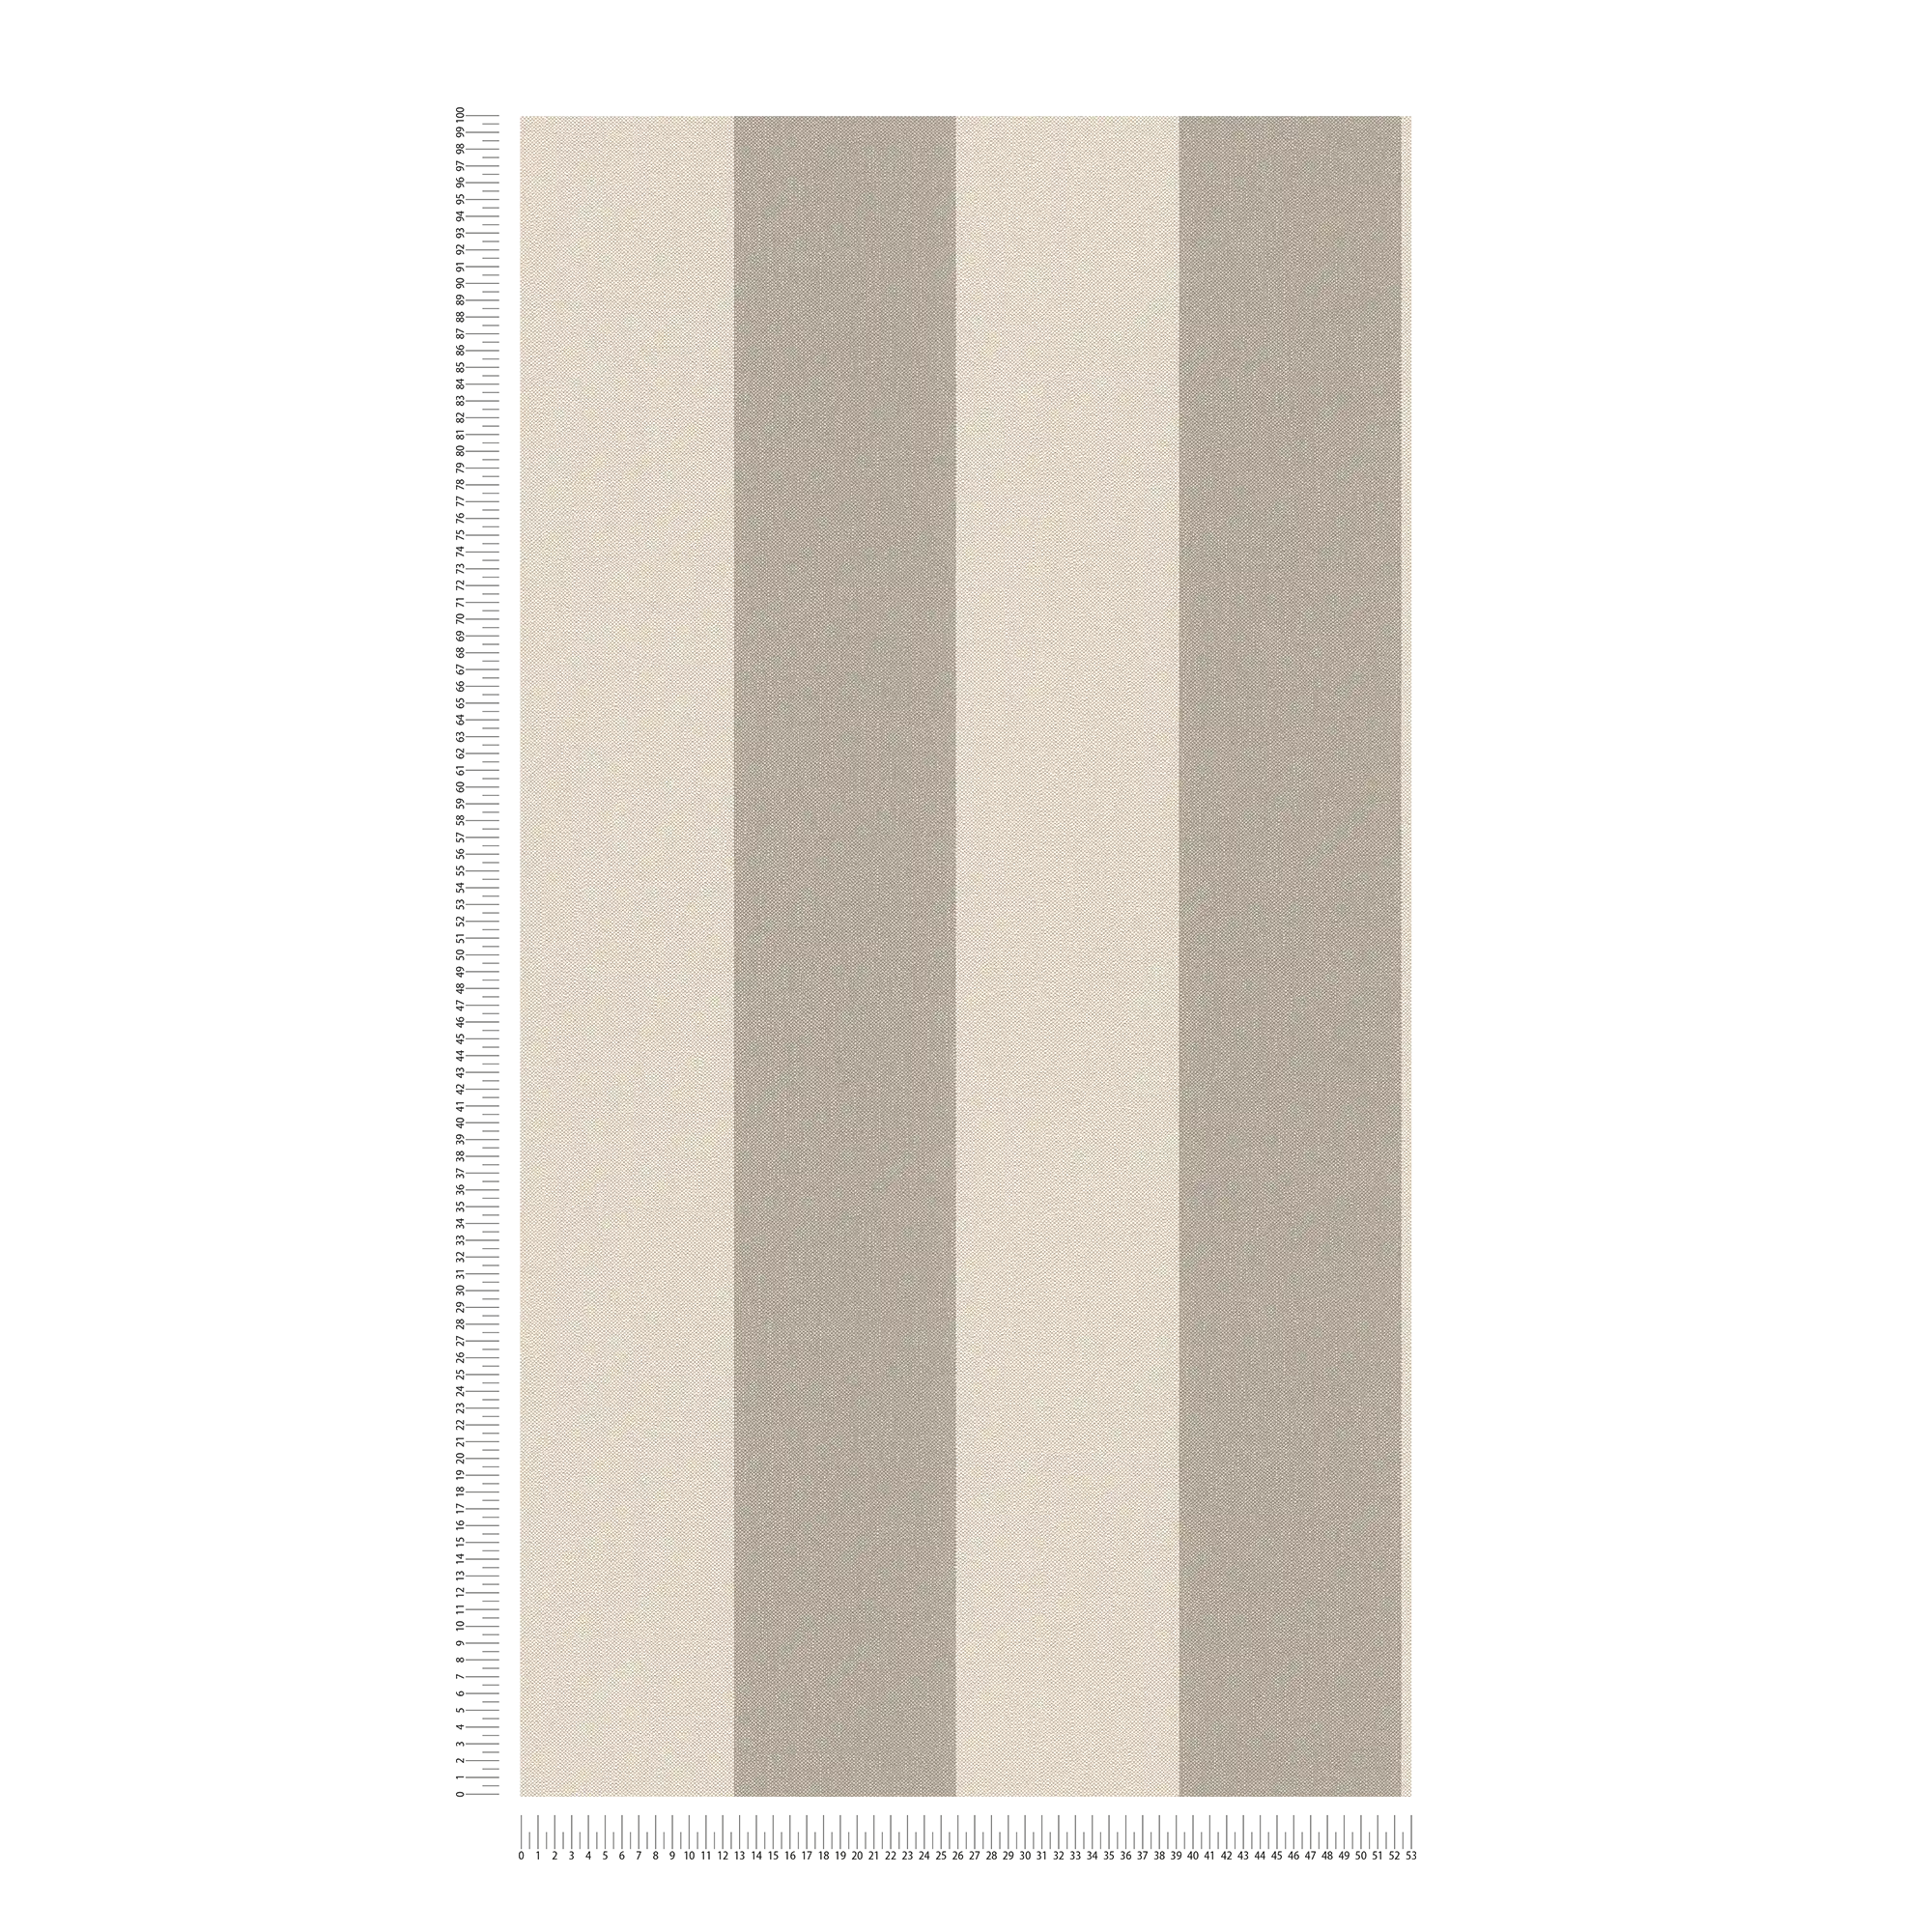             Streifentapete mit Textiloptik – Beige, Braun
        